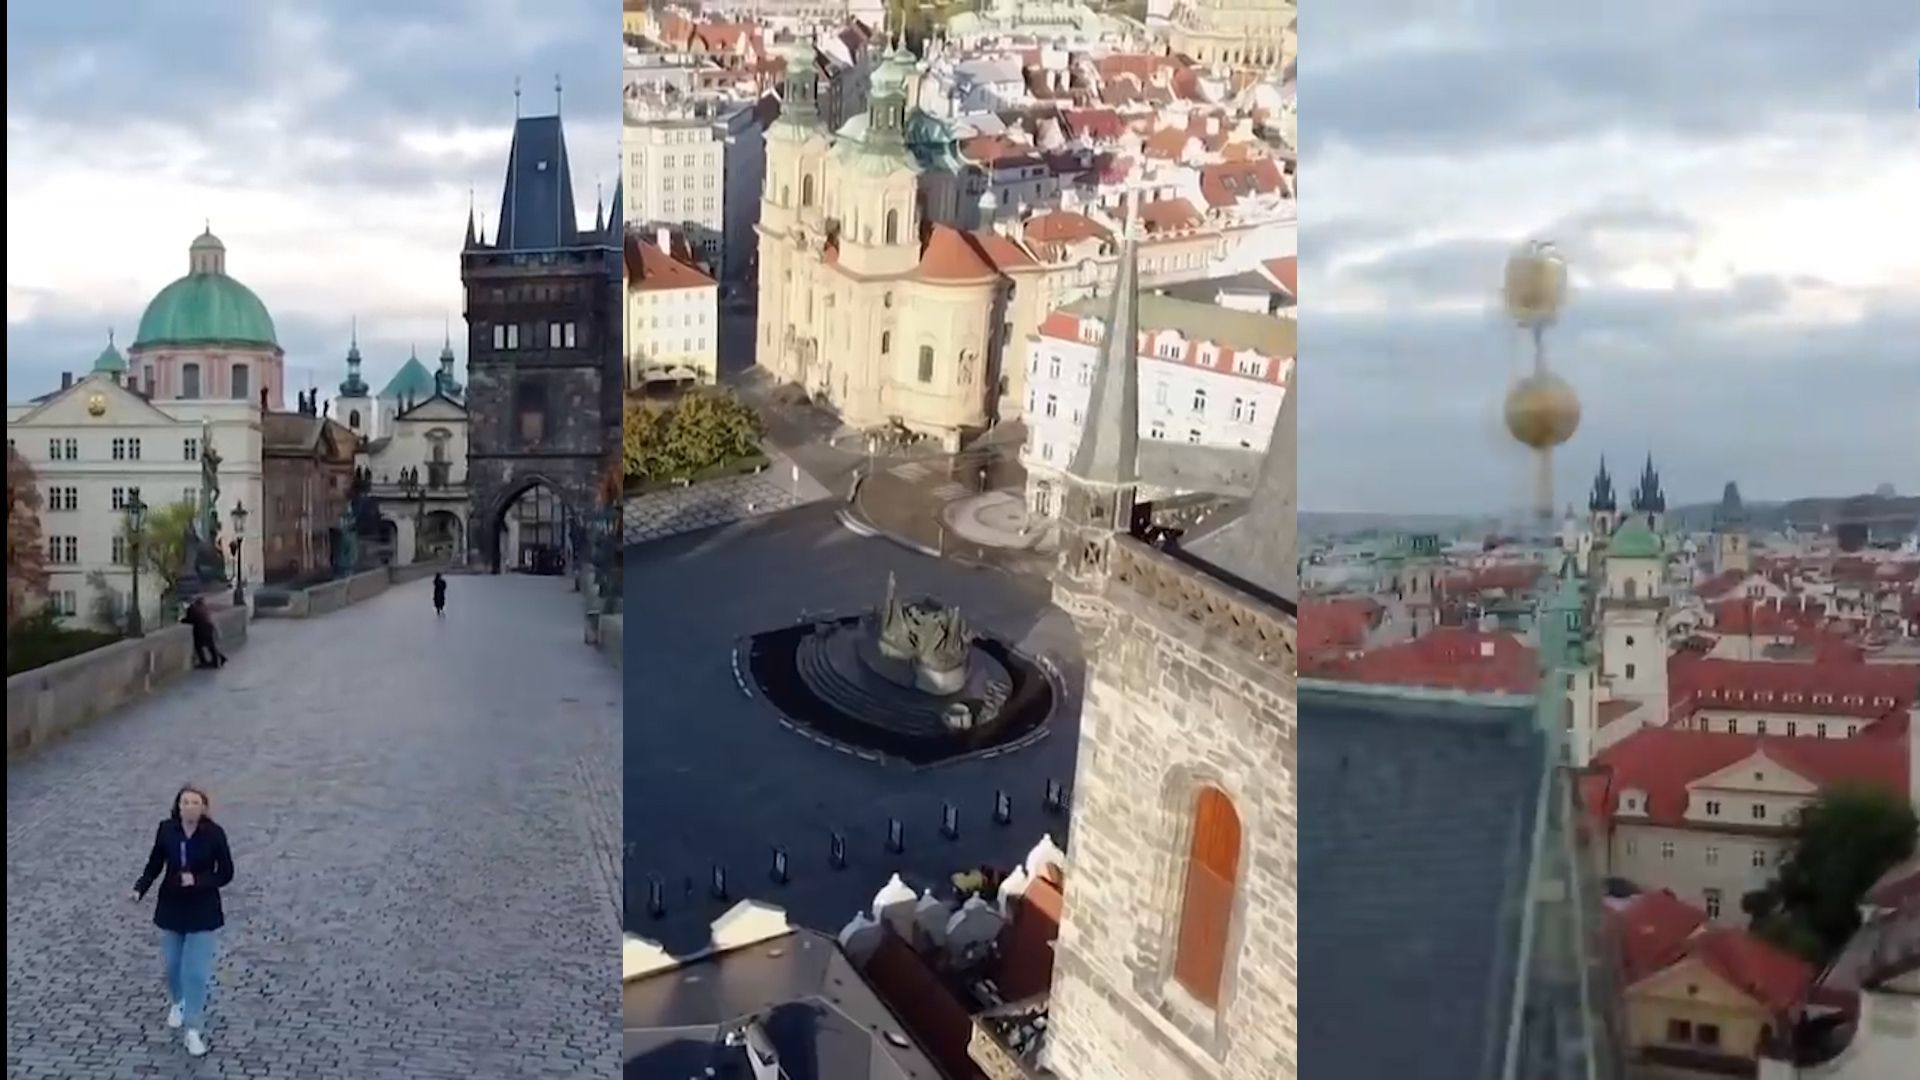 Štáb Rusky Darjy Grigorovové pourušuje zákon s kamerou na dronu létá bez povolení v zakázané zóně Pražského hradu.